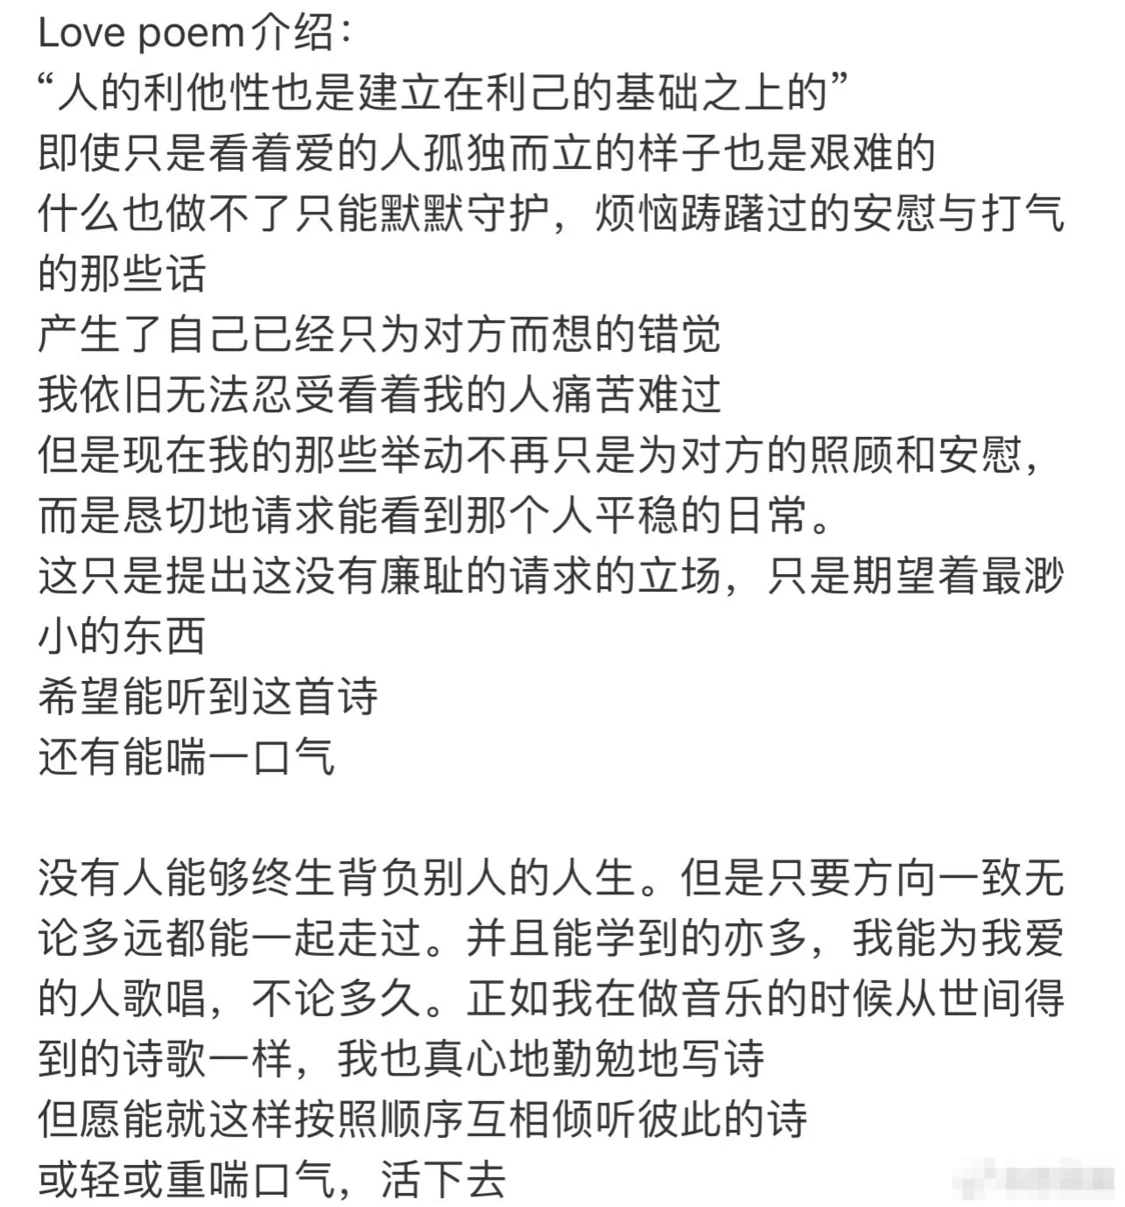 IU台灣演唱會用三國語言向地震罹難者表示哀悼